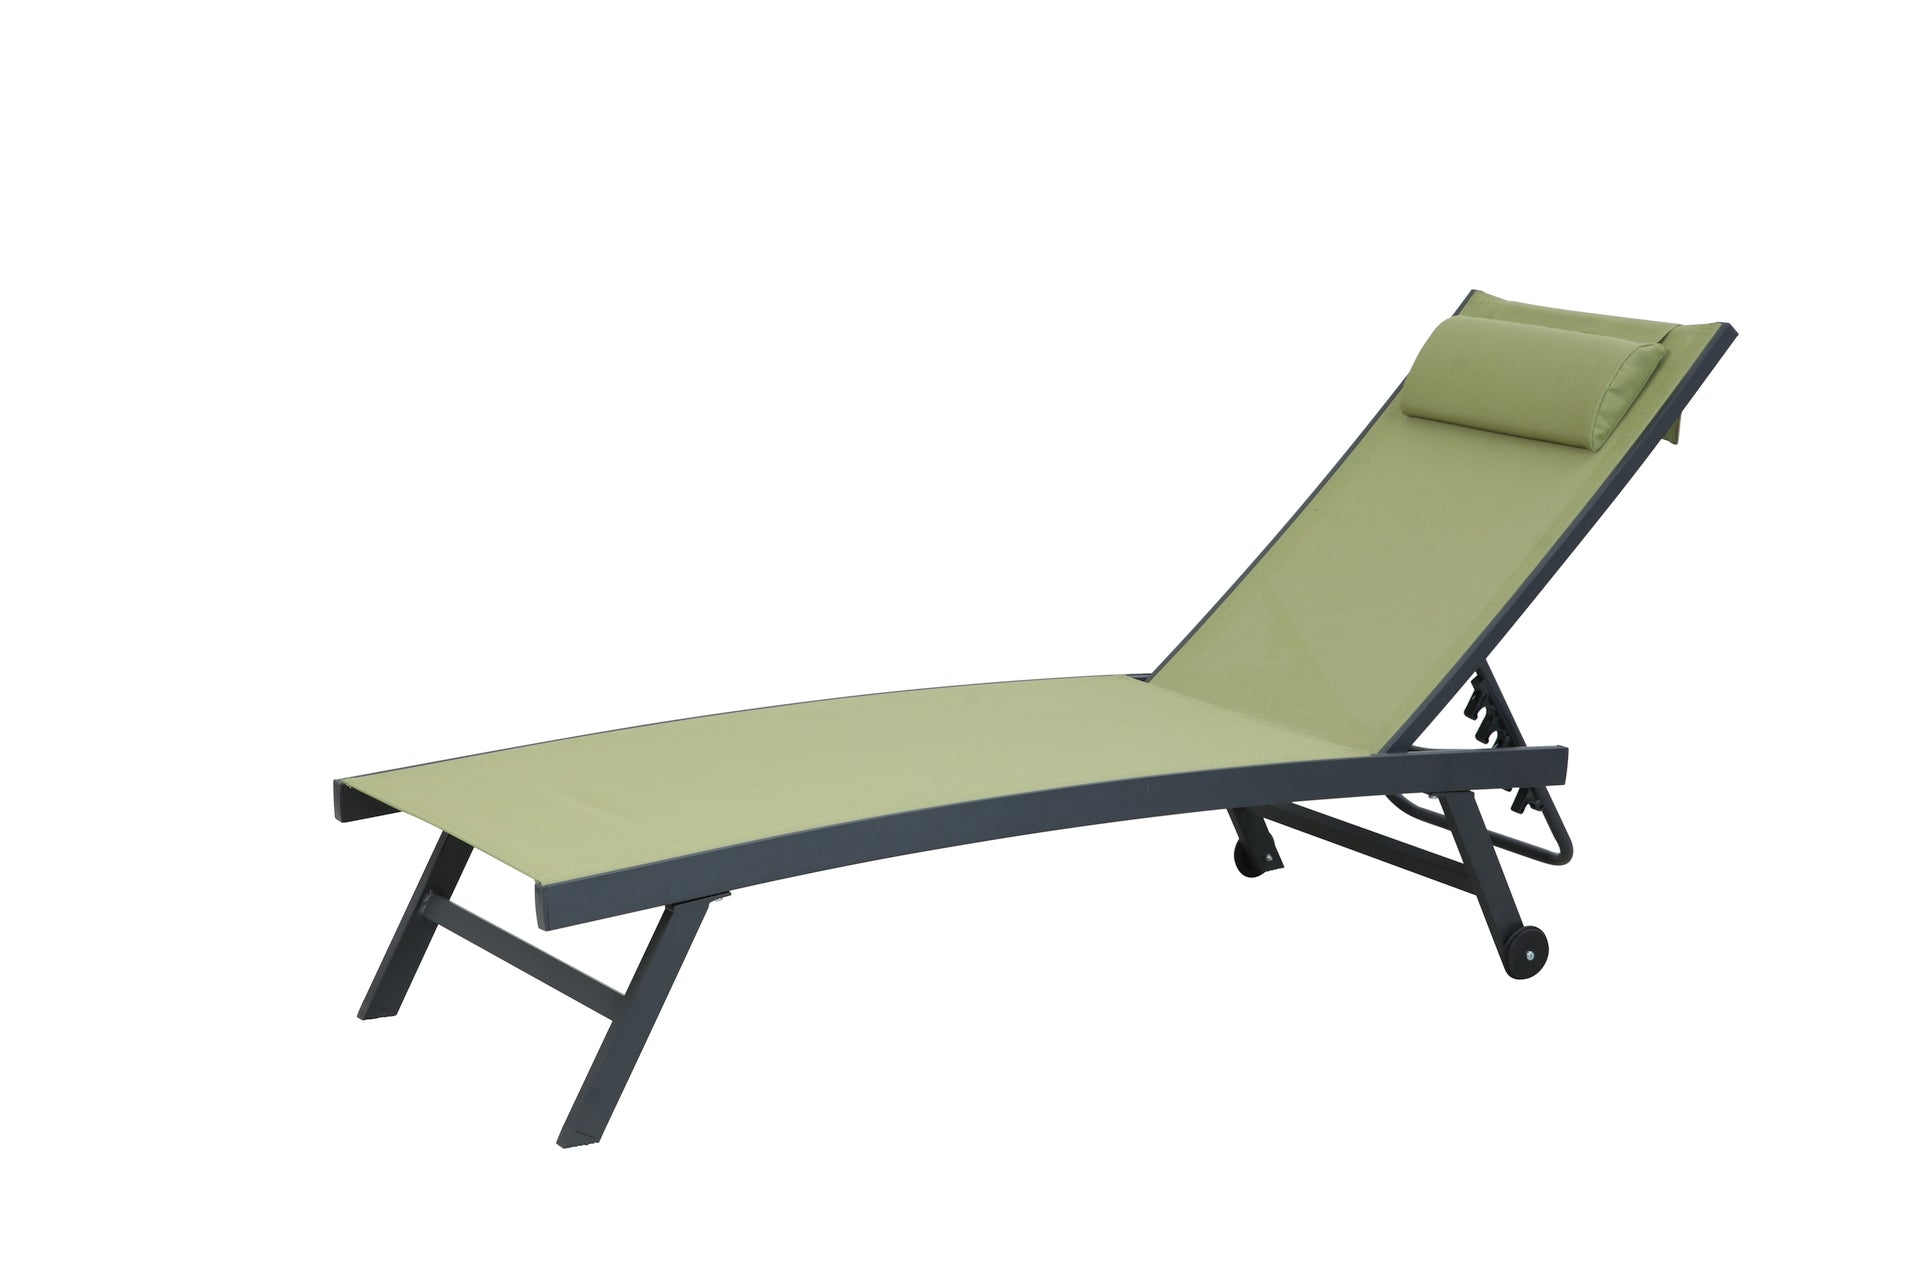 Sonnenliege Gennaro mit anthrazitfarbenem Aluminiumgestell und grüner Textilenbespannung, mit integrierter Kopfstütze und Rollen, verstellbar – ideal für stilvolles Entspannen im Außenbereich.